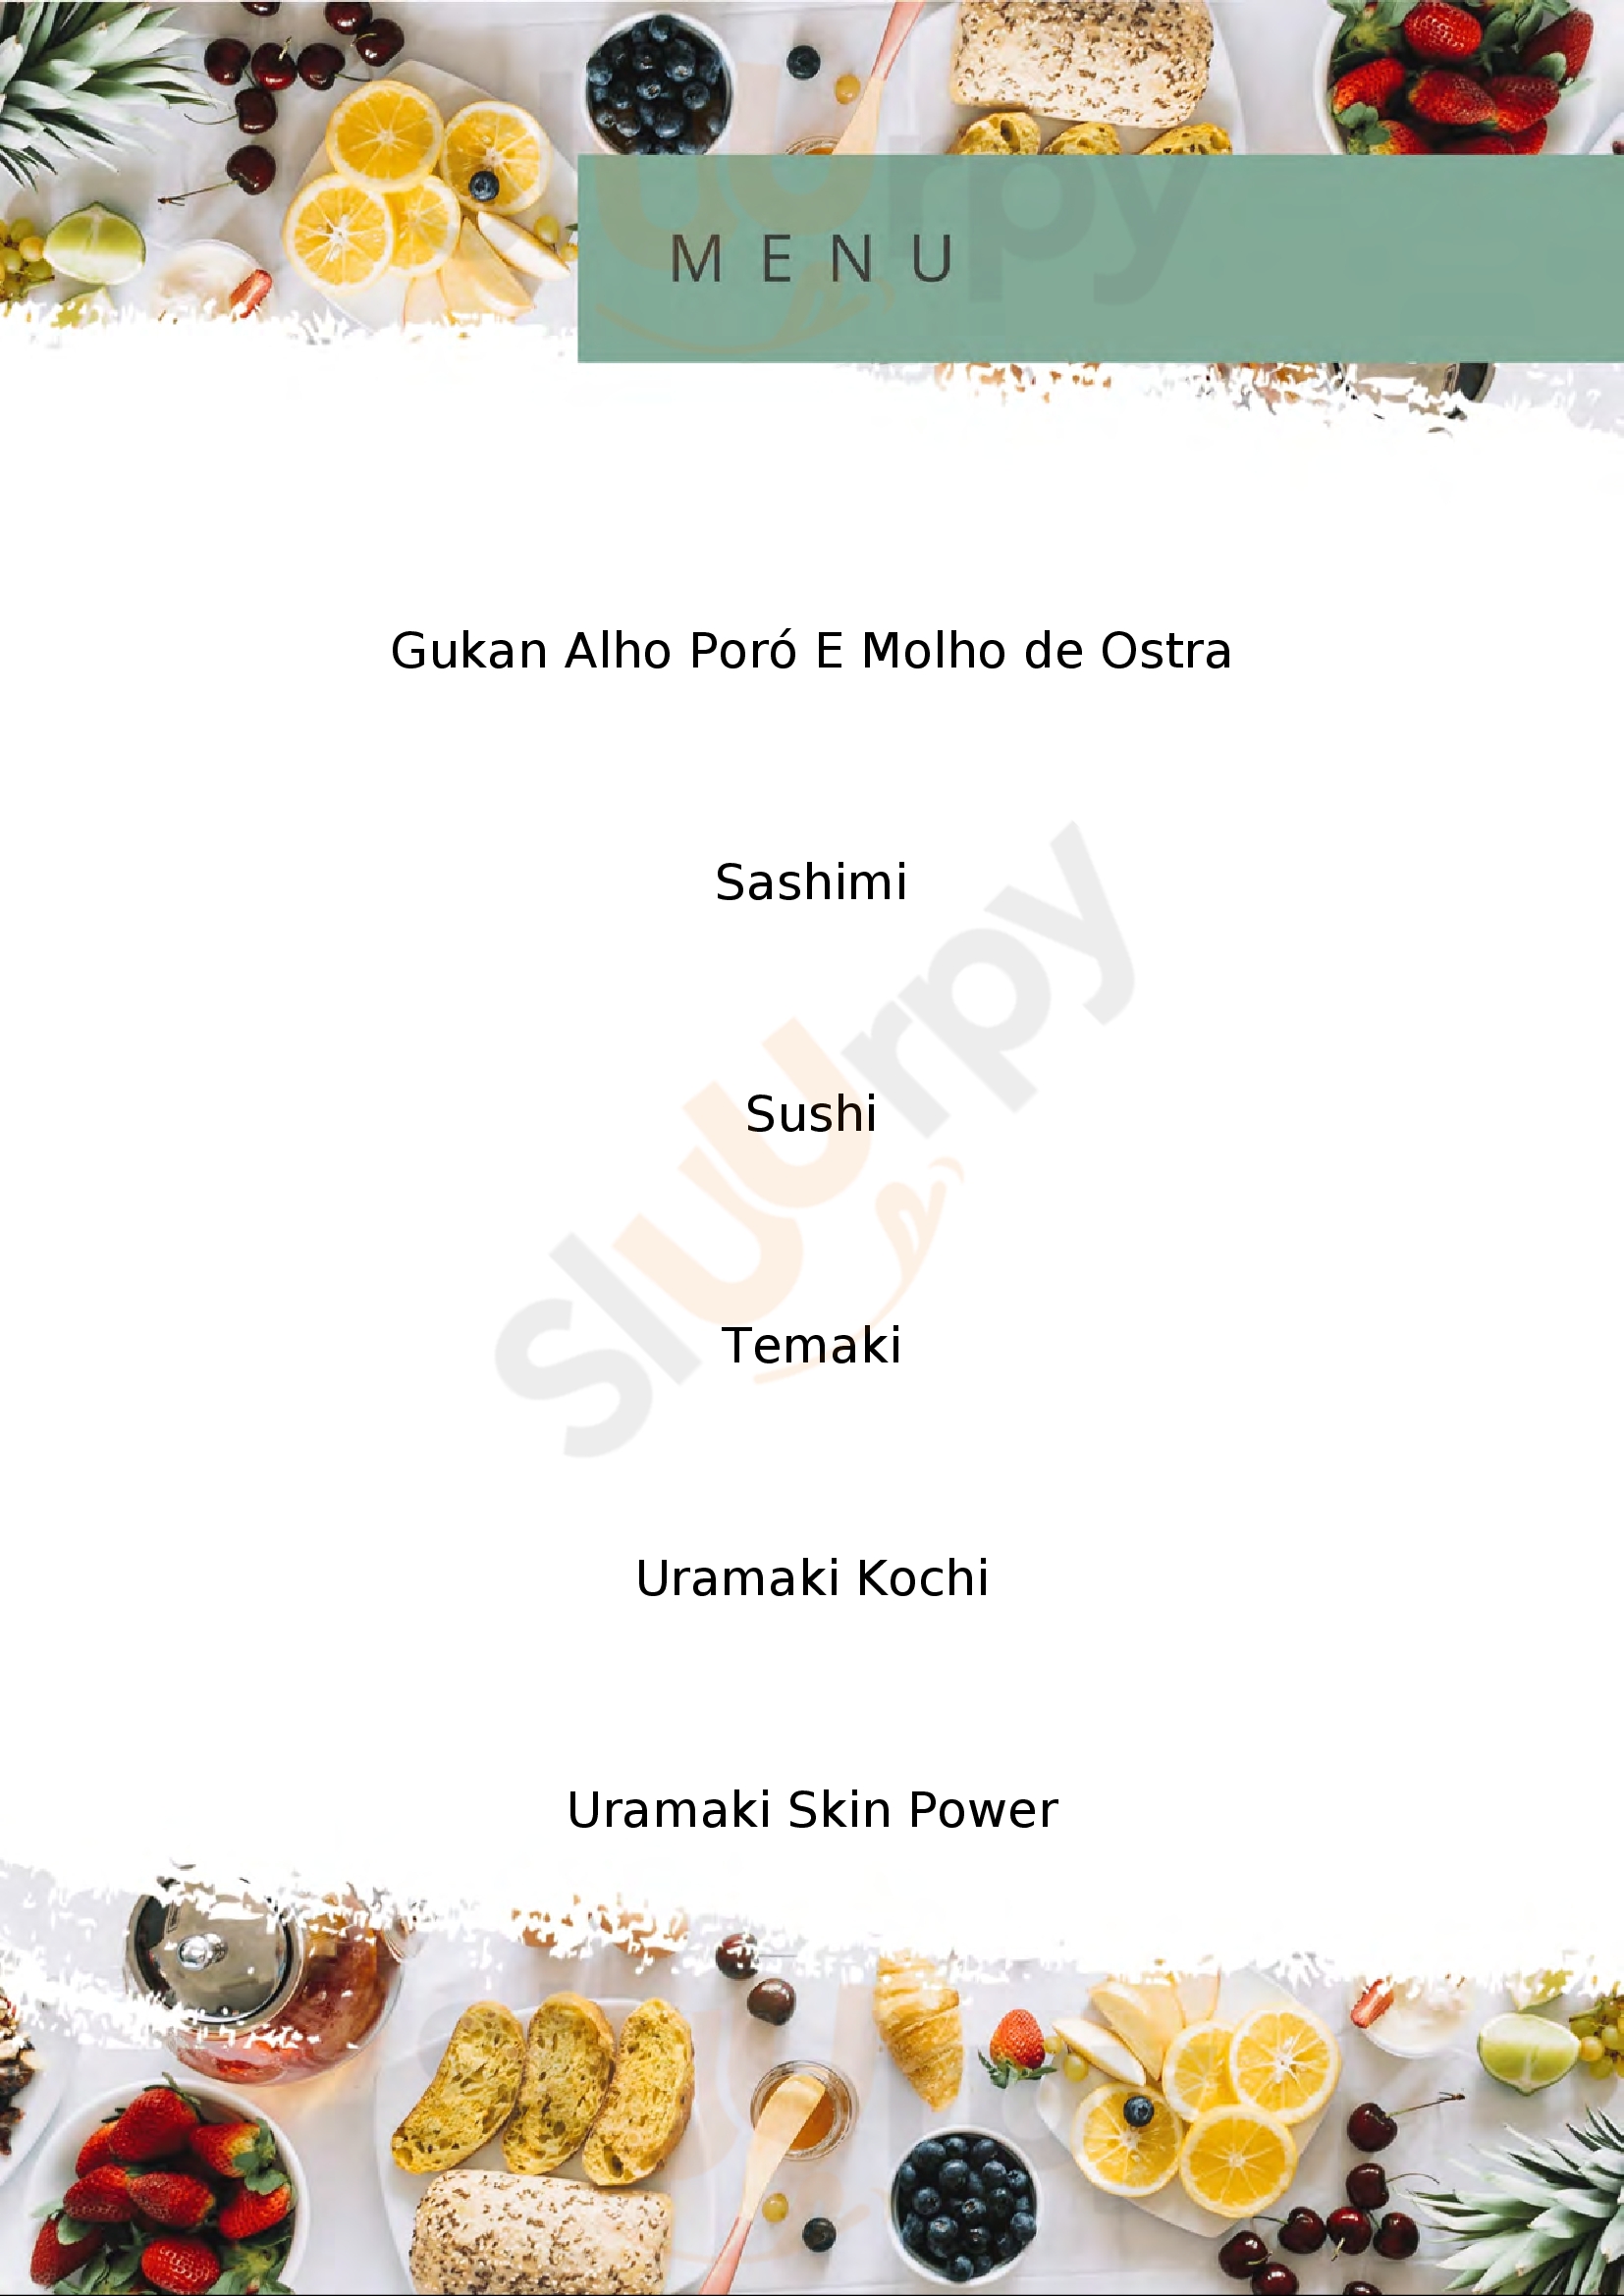 Sushi Arte Canoas Menu - 1